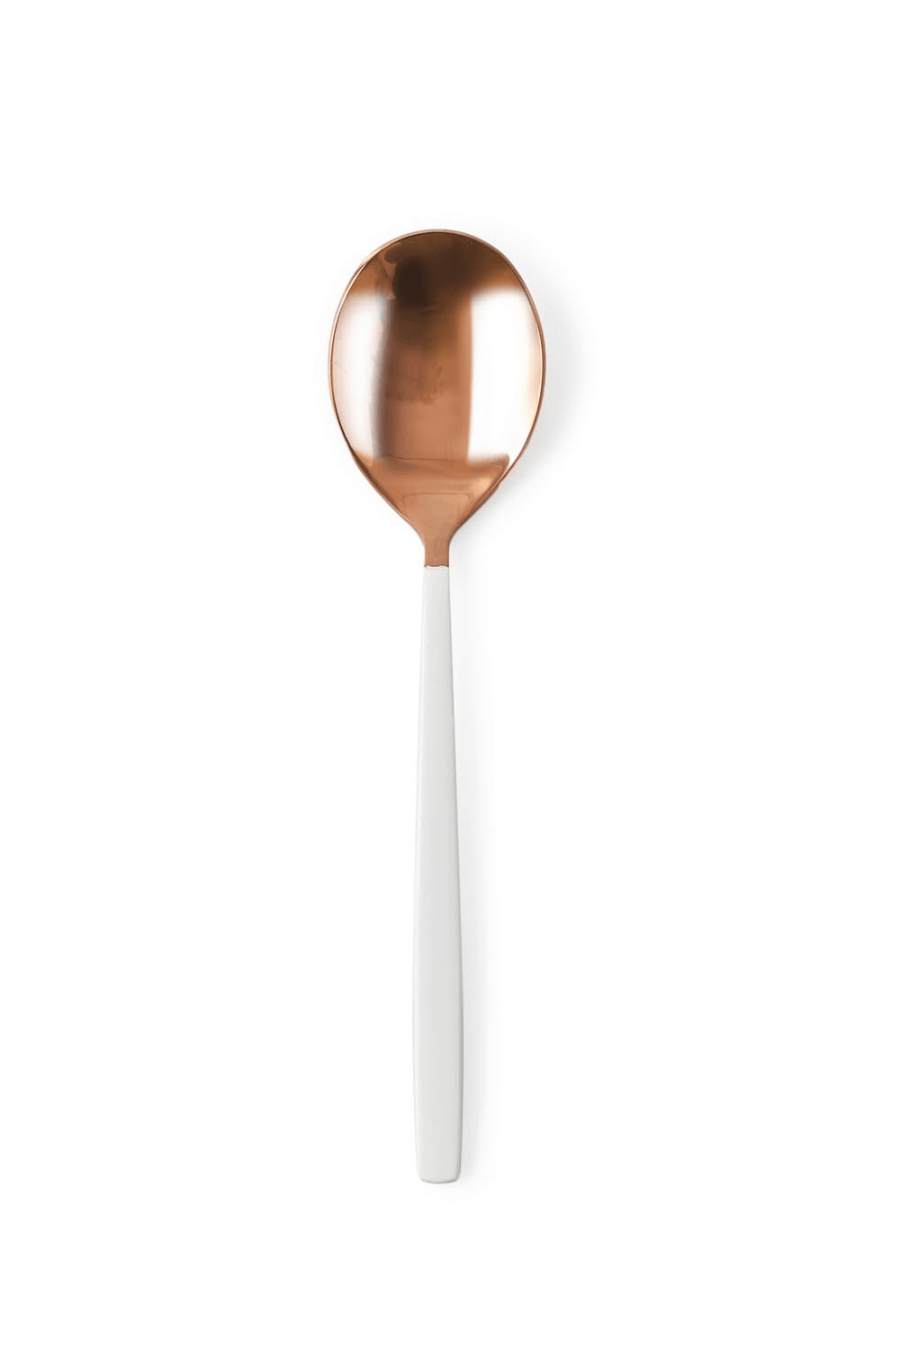 Can Carlos Spoon copper